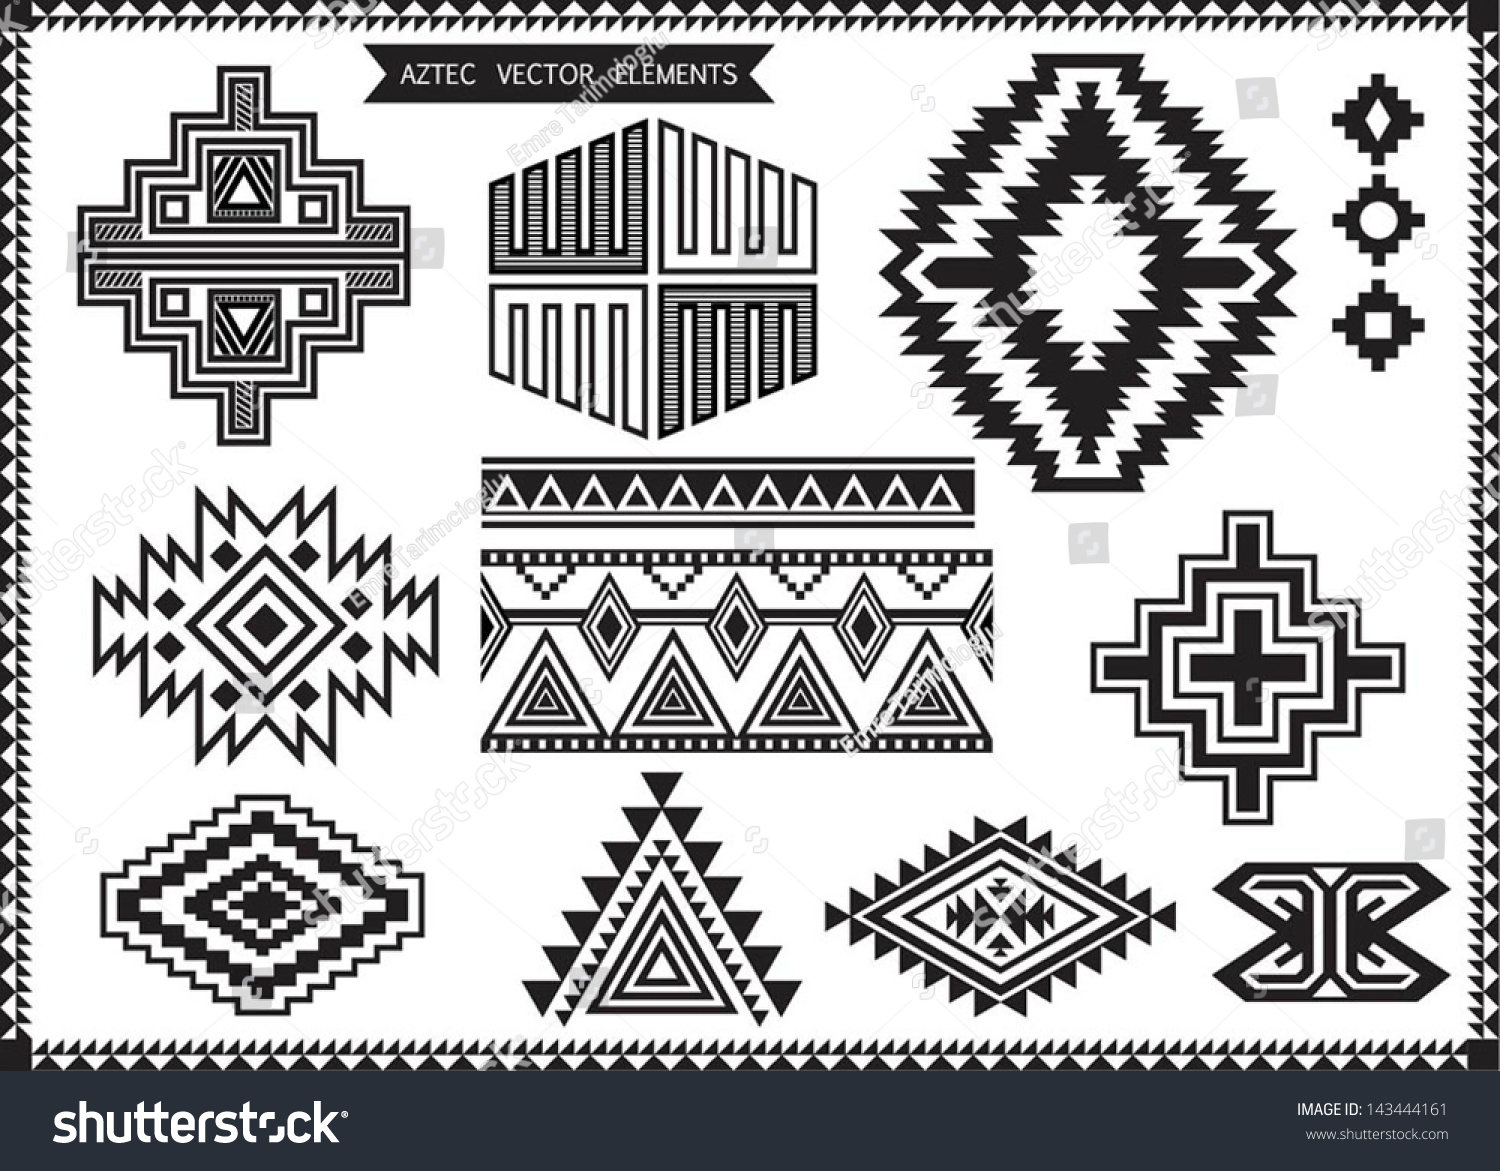 Aztec Vector Elements Set Stock Vector 143444161 - Shutterstock